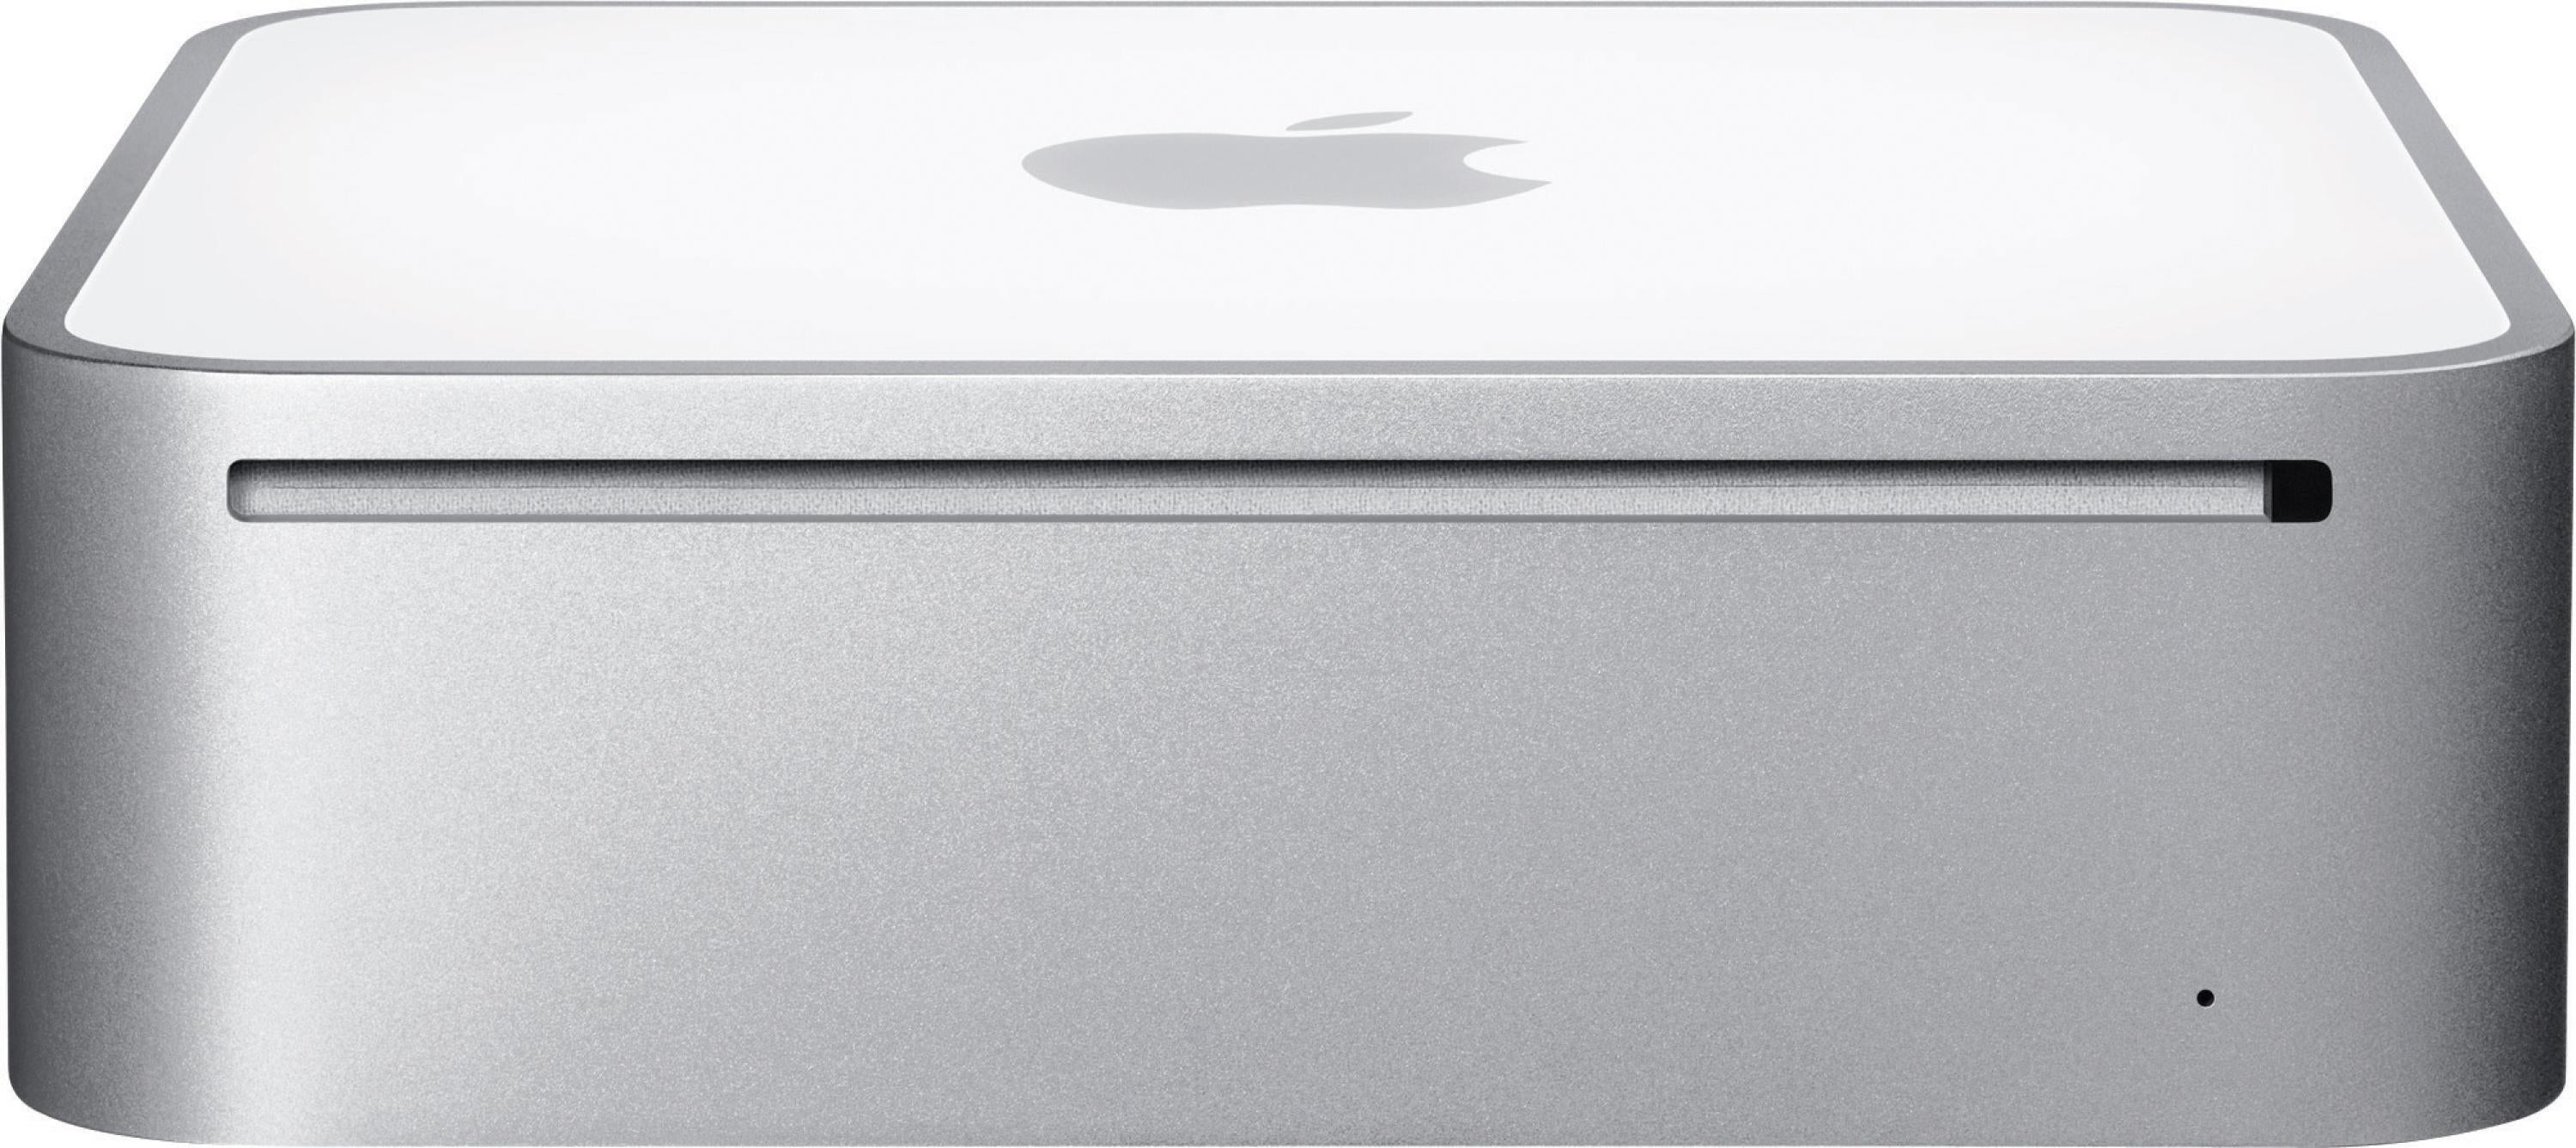 Apple Mac mini - 2.53GHz